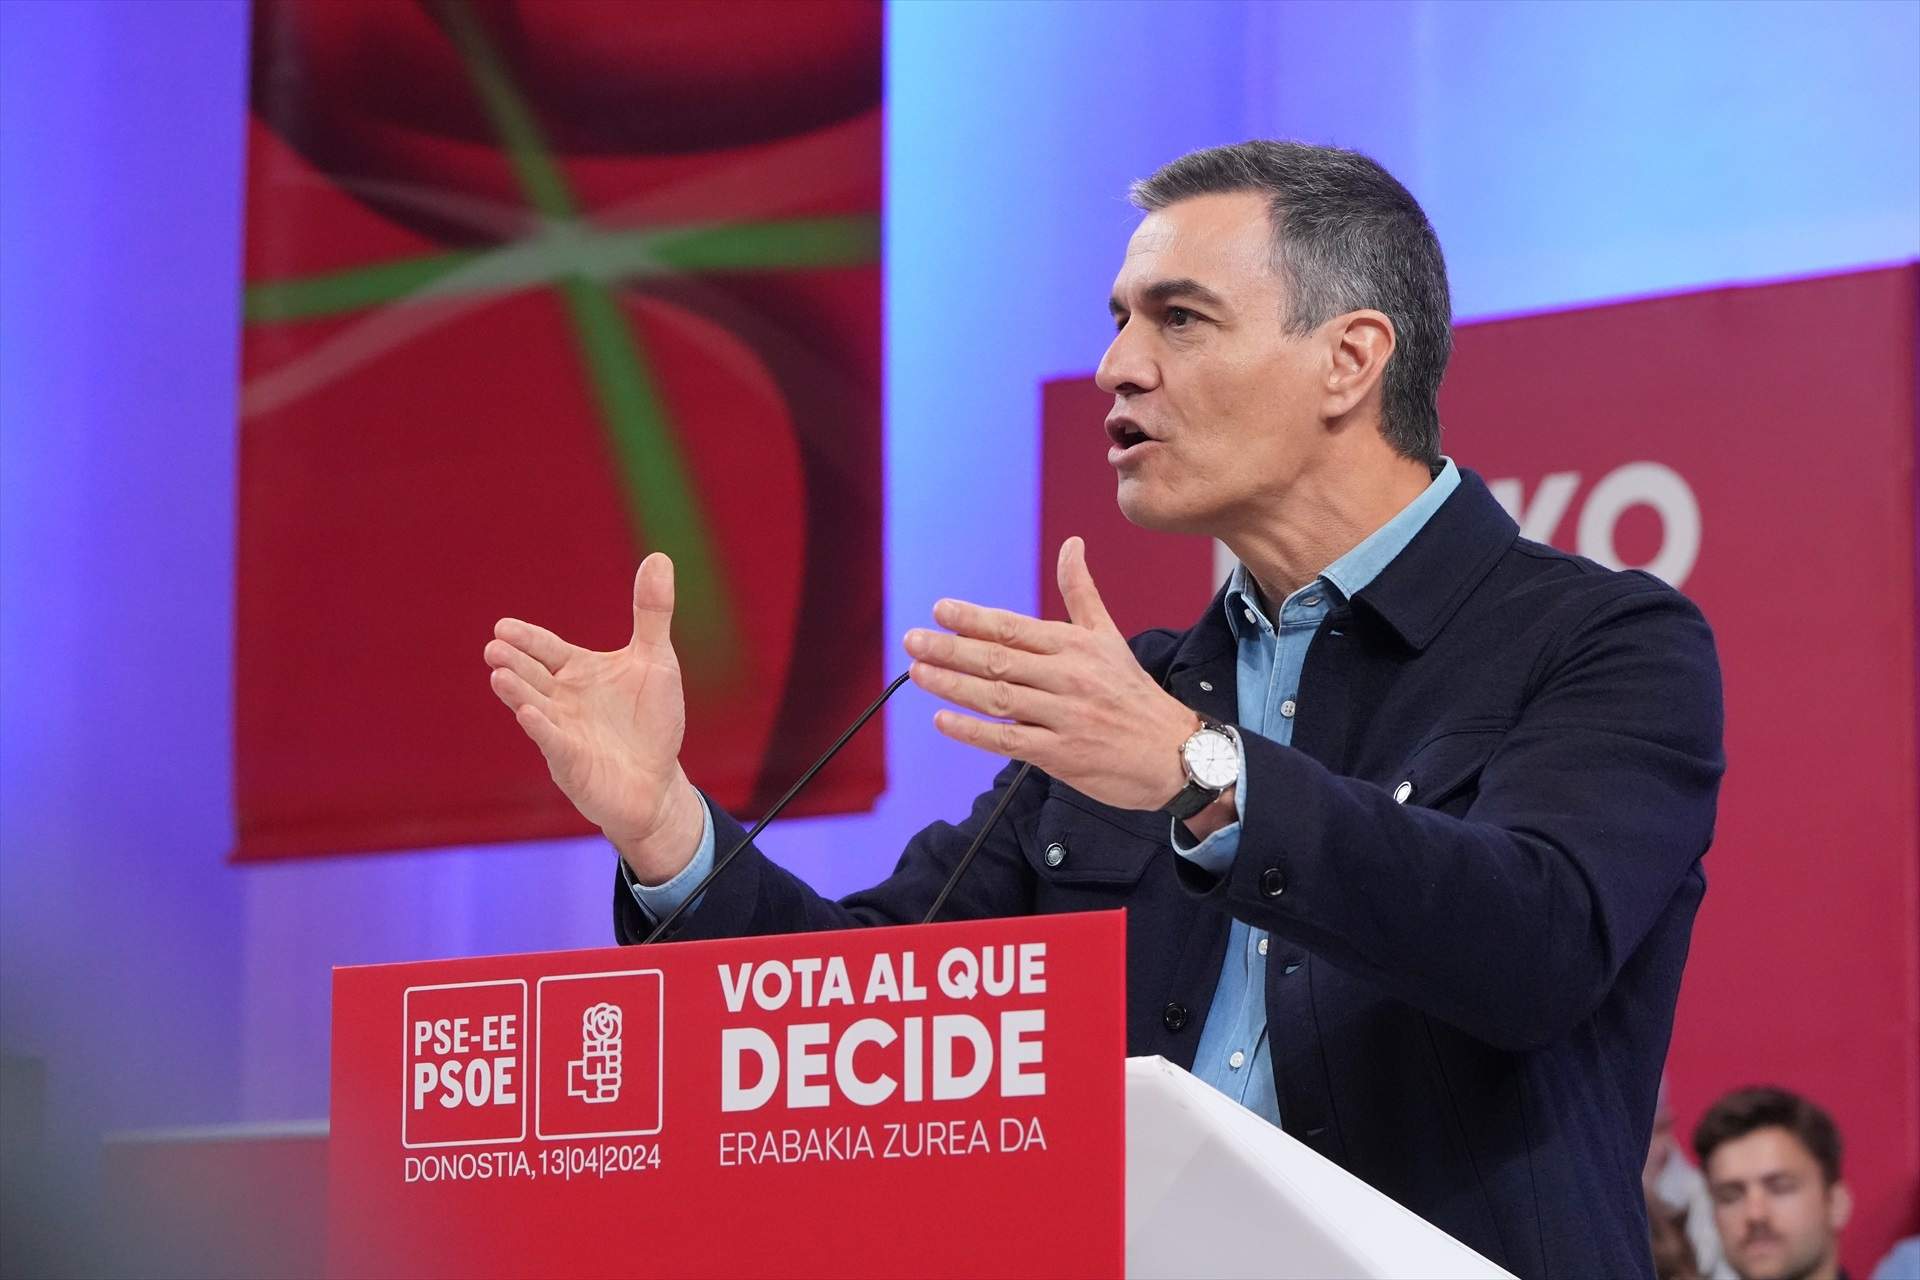 Pedro Sánchez treu pit del creixement econòmic: “Ni mil palades de fang de PP i Vox taparan els èxits”